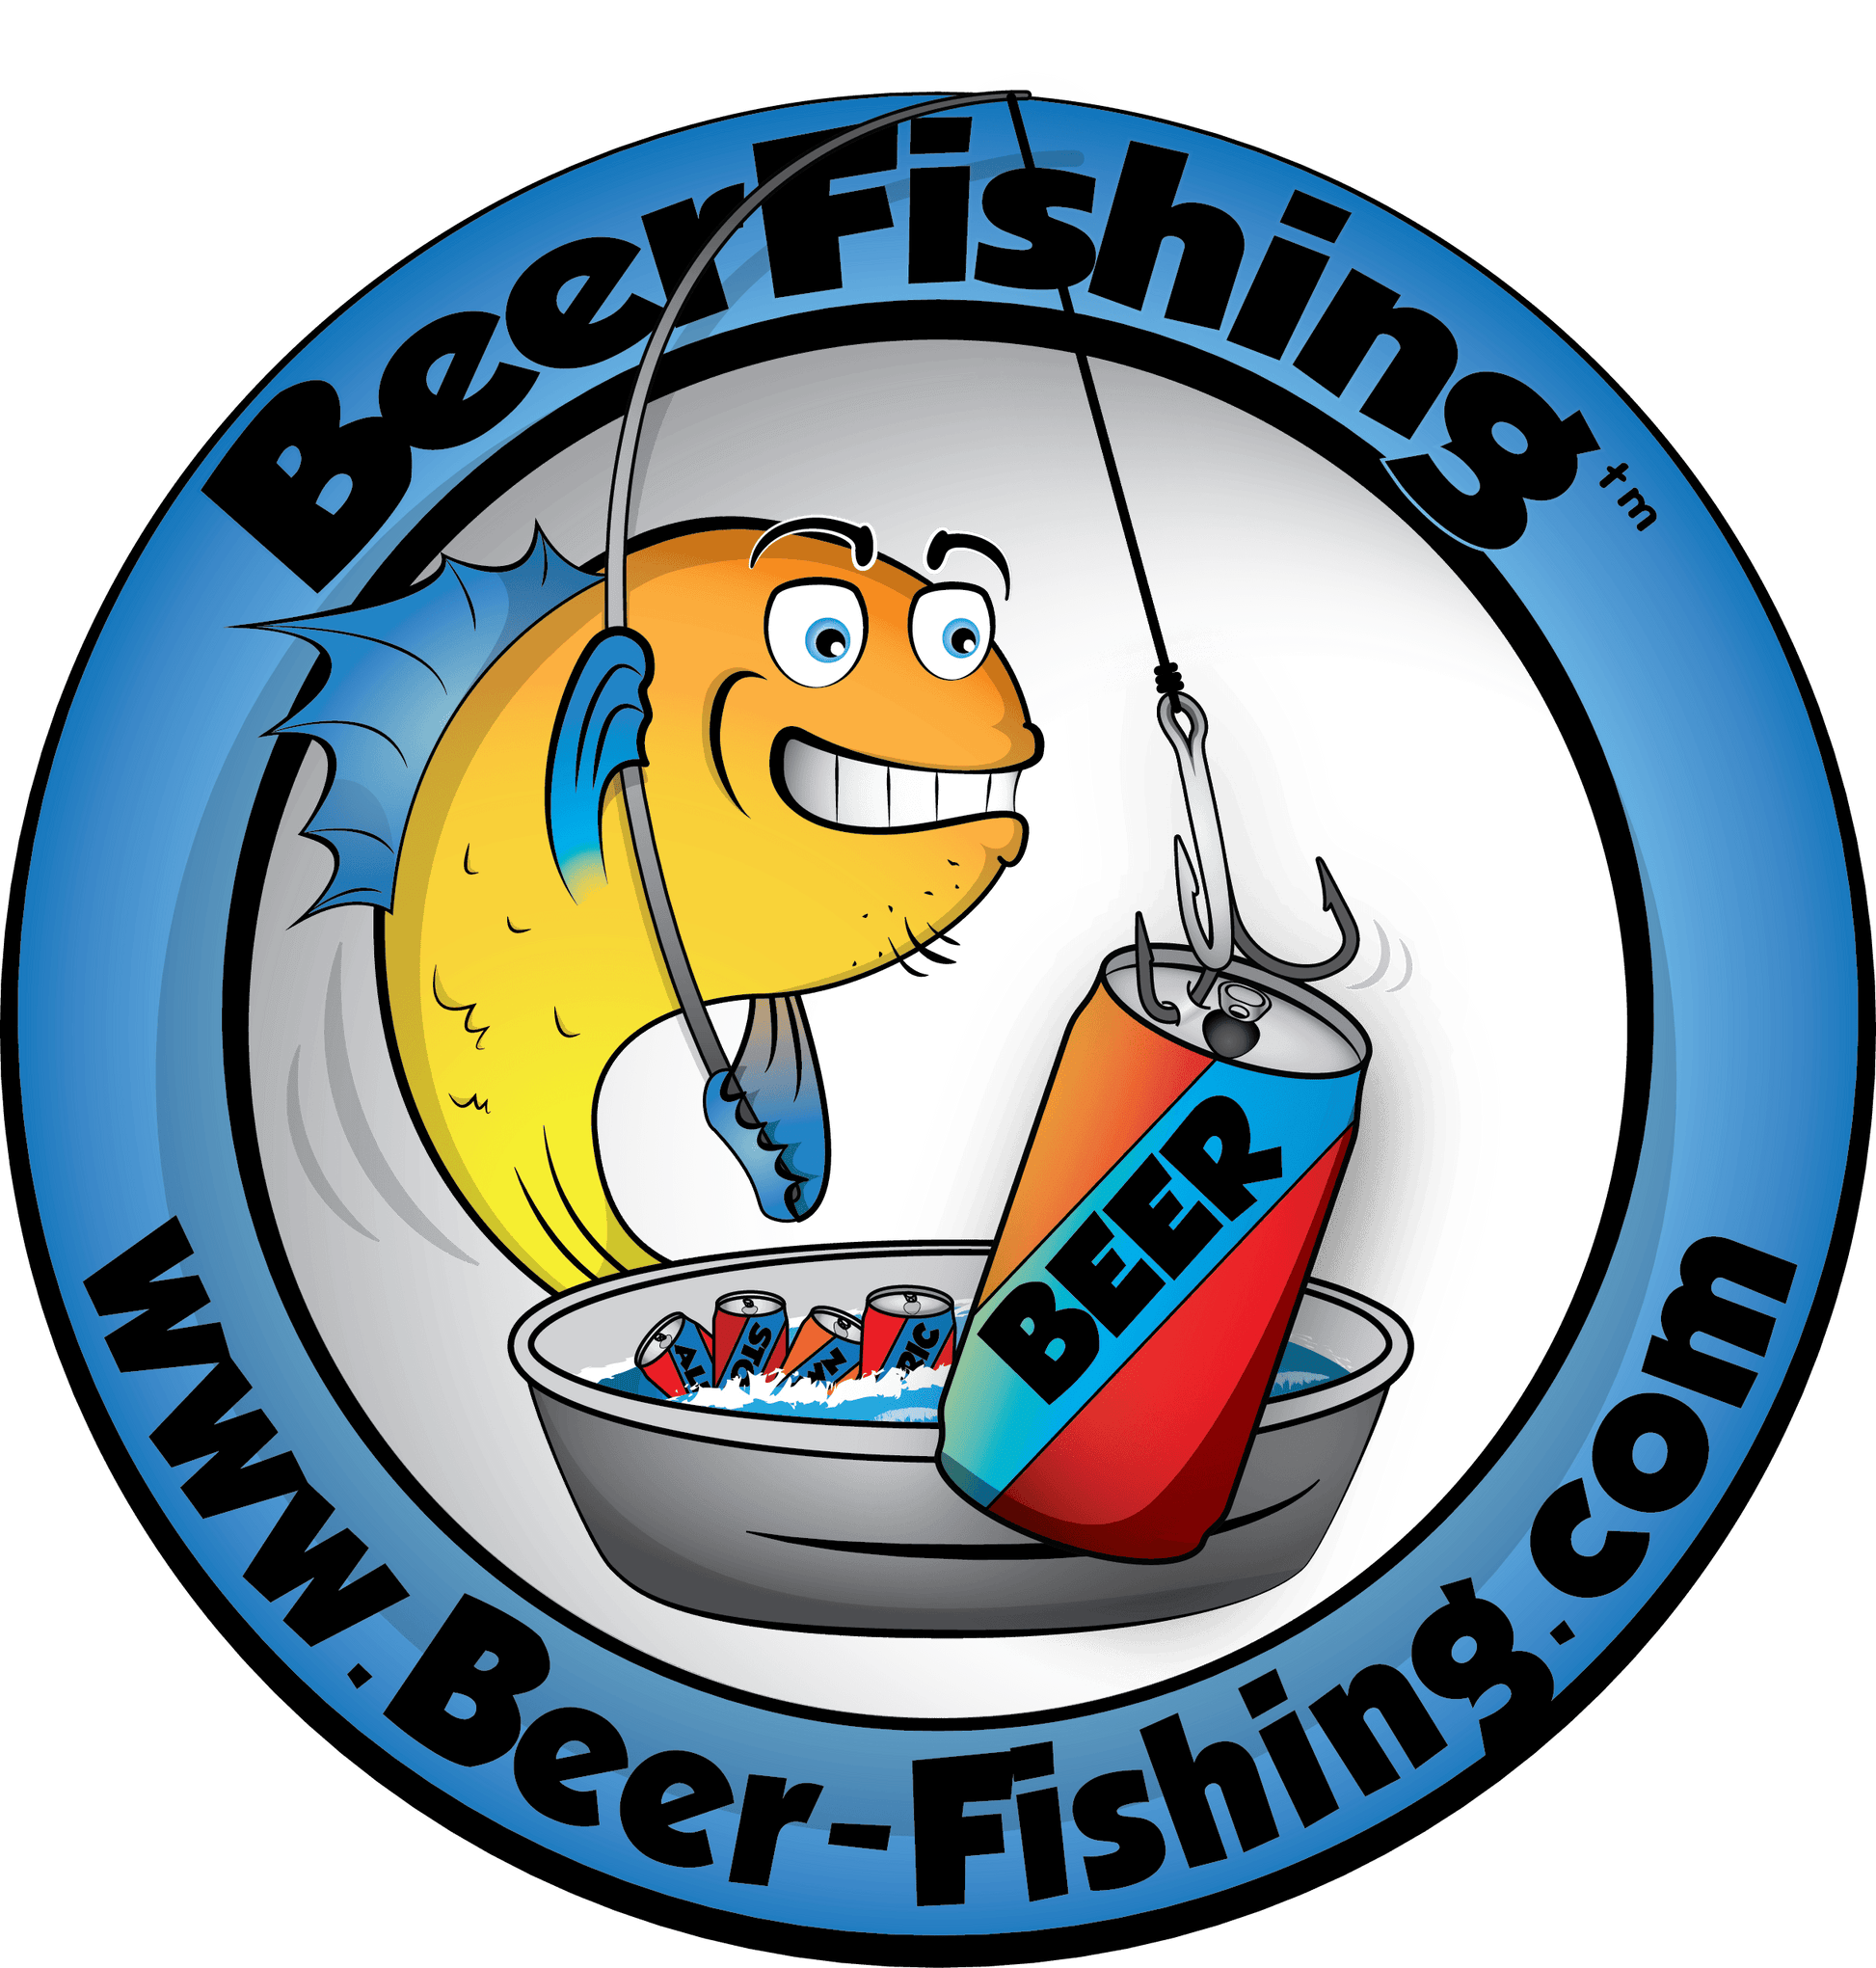 Beer Fishing - Drink Easy 